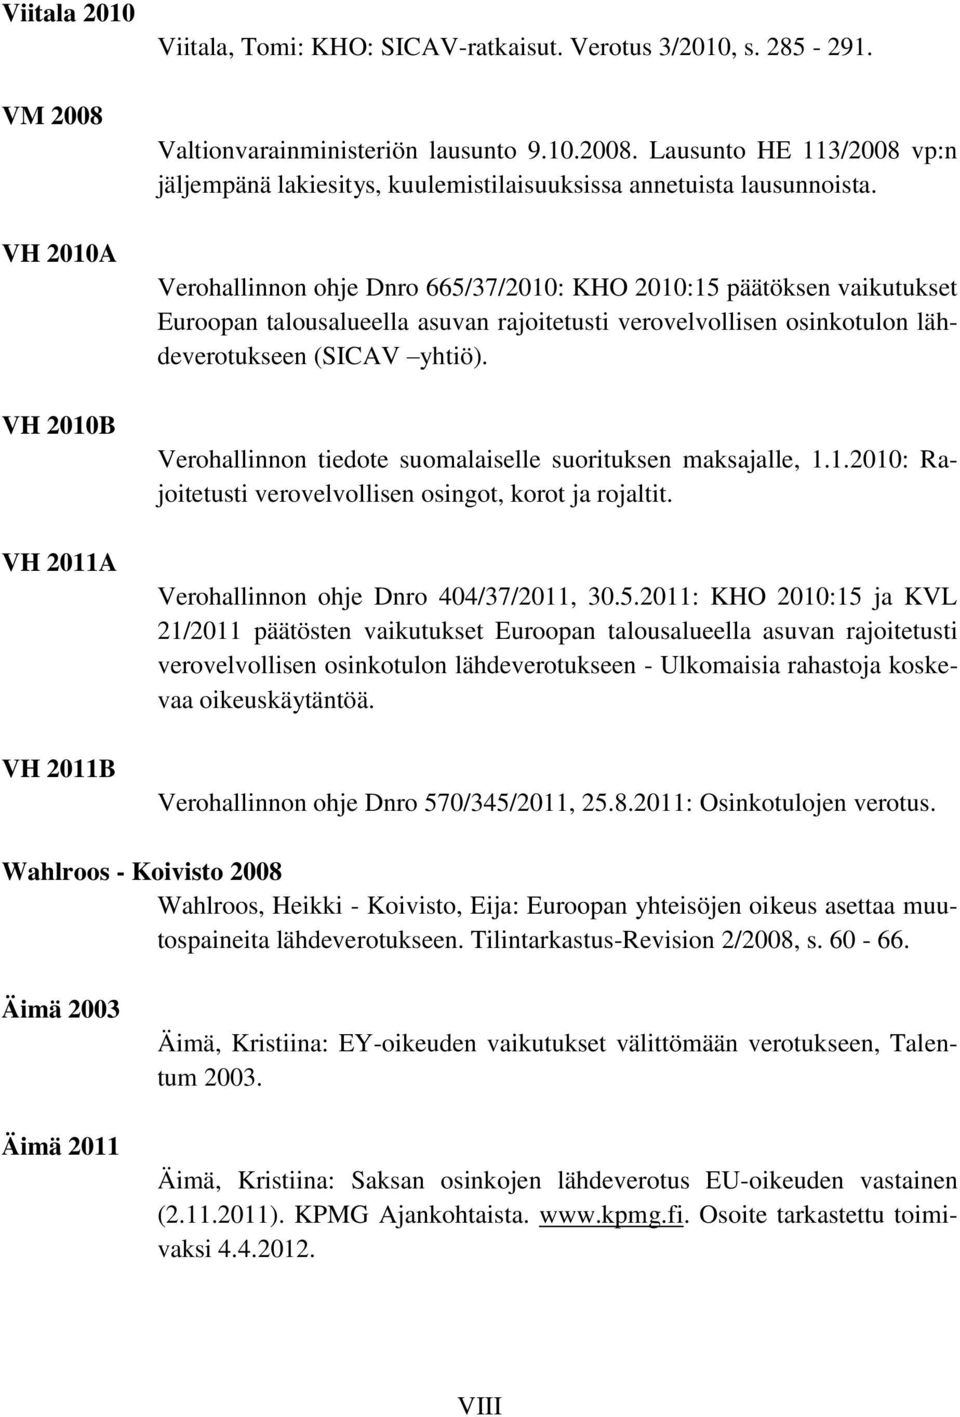 Verohallinnon tiedote suomalaiselle suorituksen maksajalle, 1.1.2010: Rajoitetusti verovelvollisen osingot, korot ja rojaltit. Verohallinnon ohje Dnro 404/37/2011, 30.5.